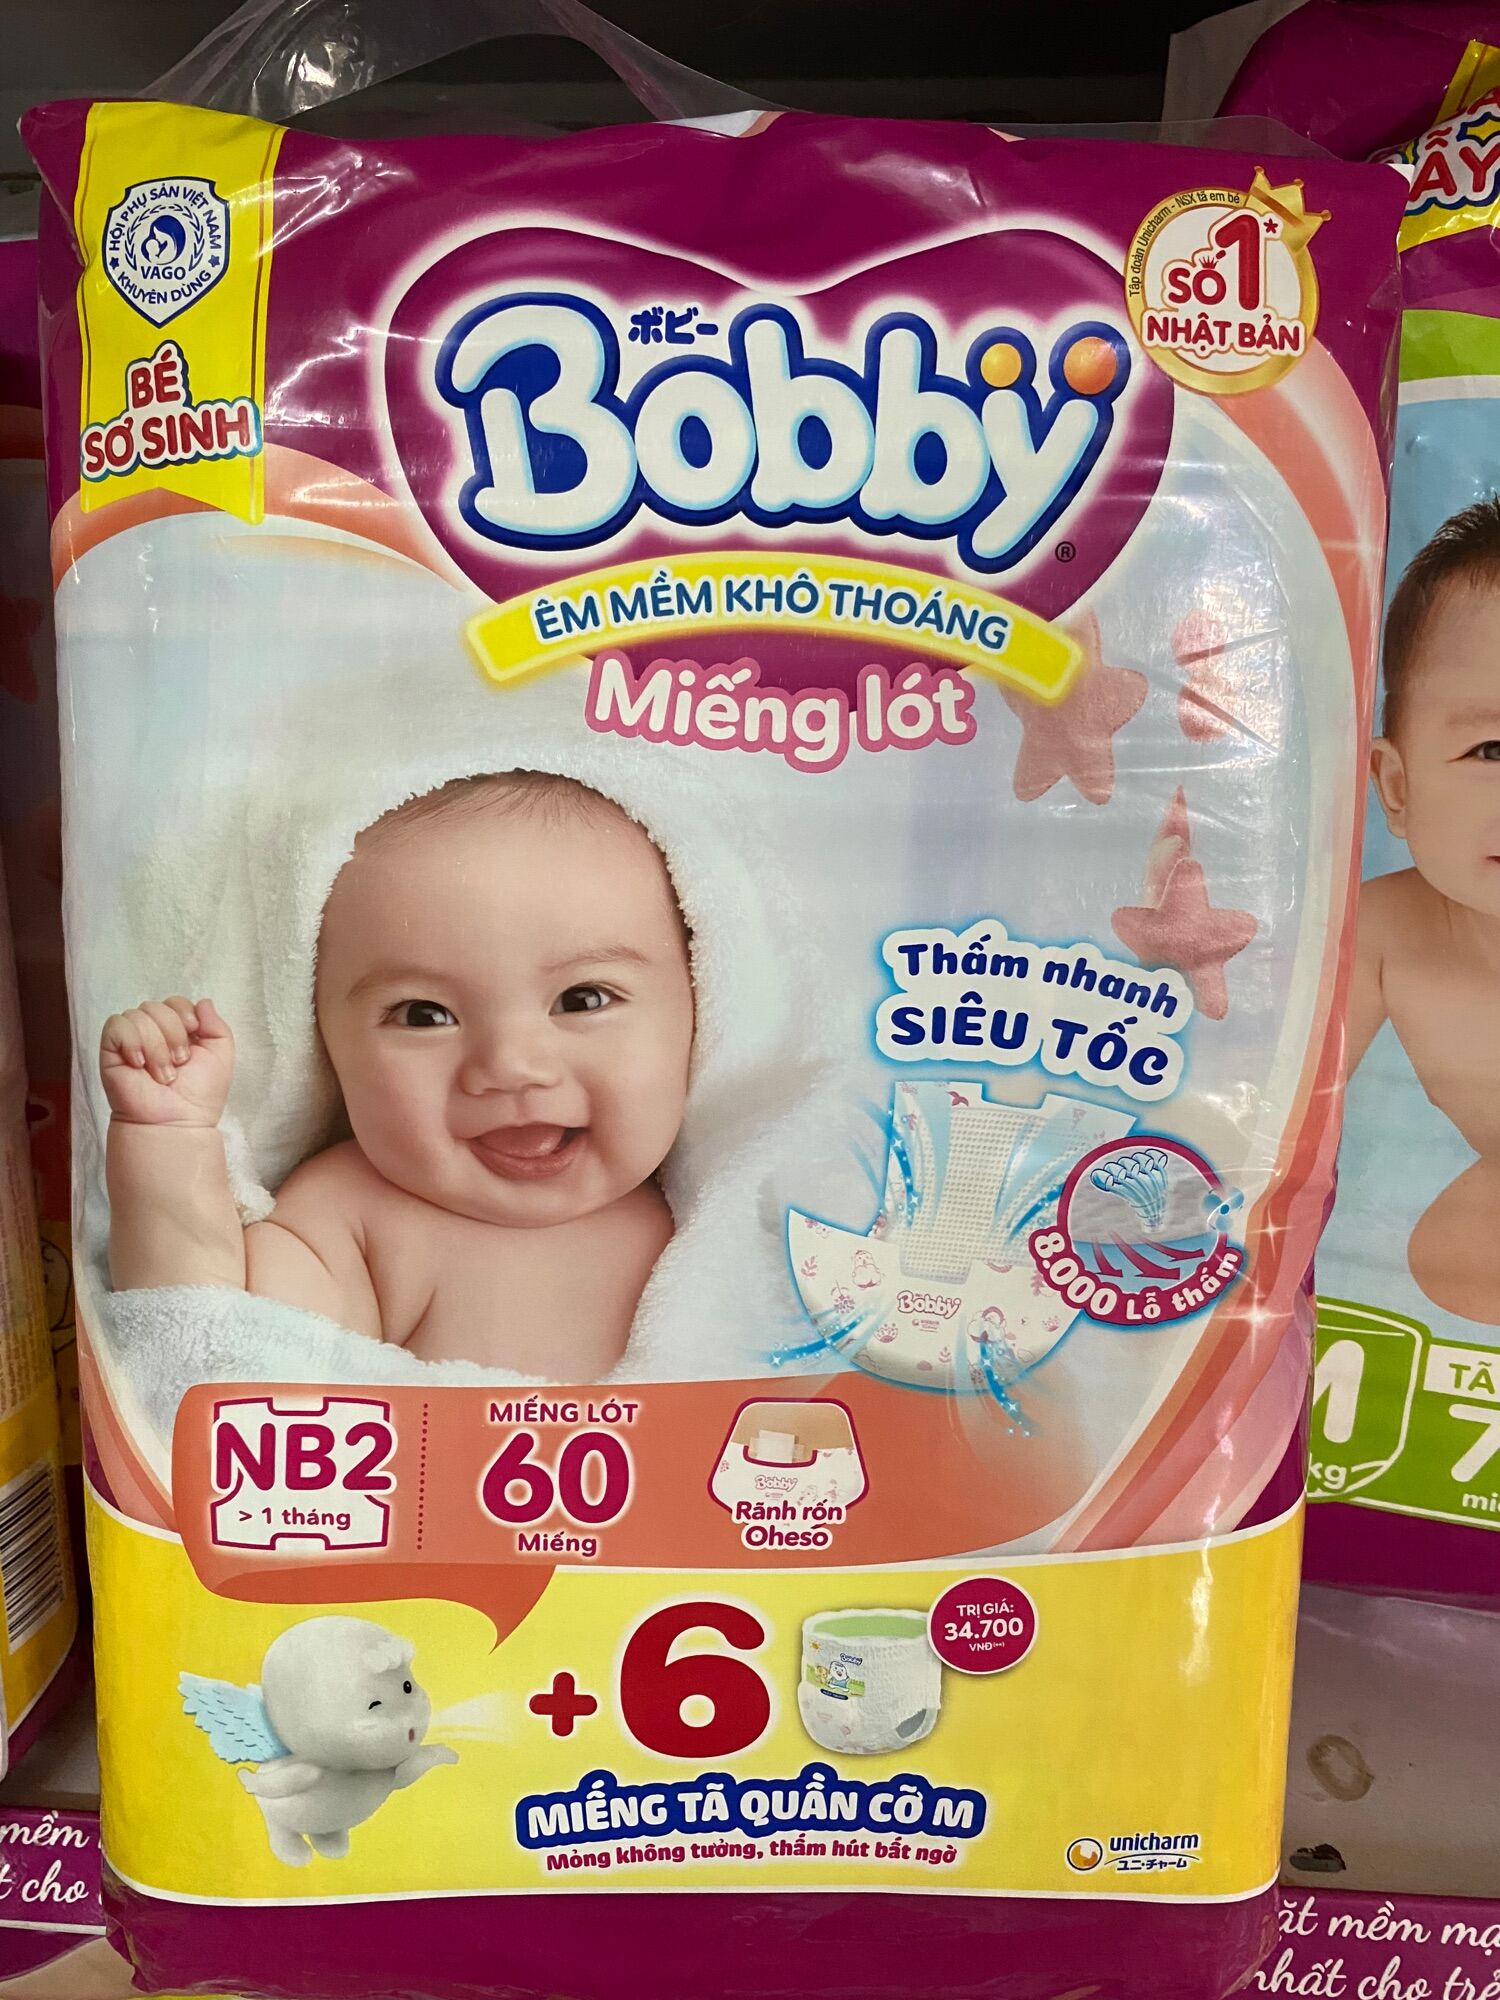 Chính Hãng Miếng Lót Sơ Sinh Bobby Newborn 2-60 Miếng cho bé trên 1 tháng